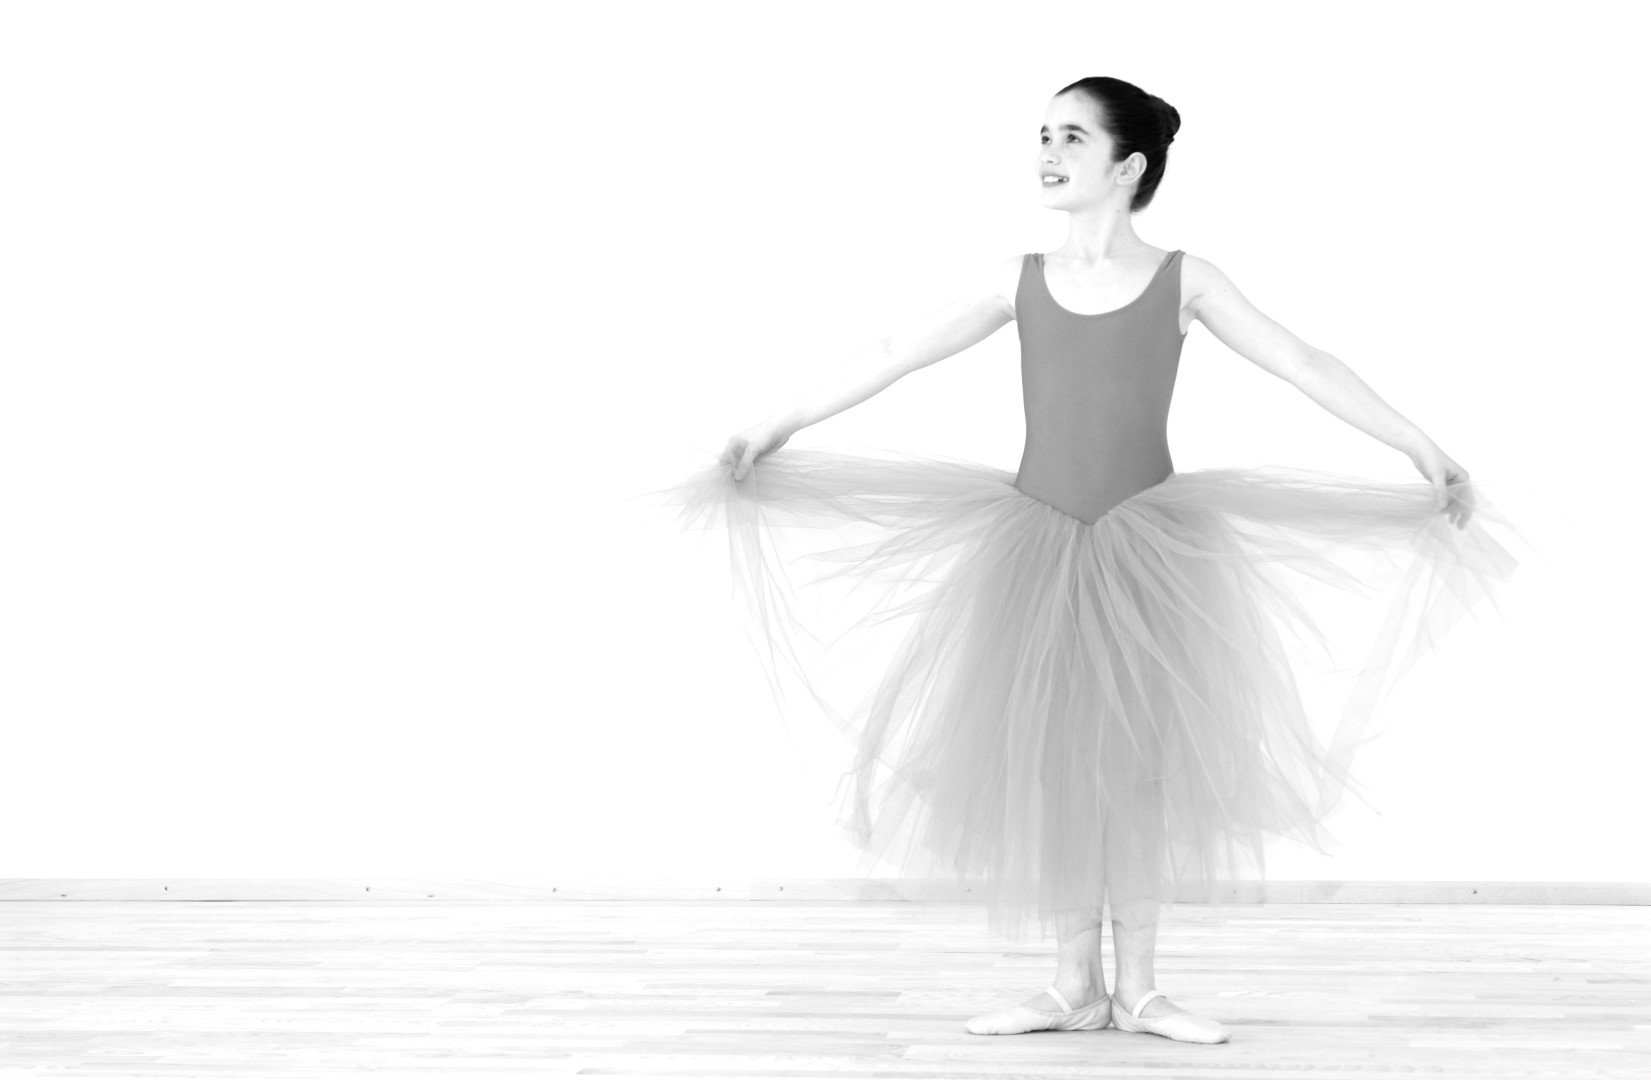 Das Bild zeigt eine junge Tänzerin